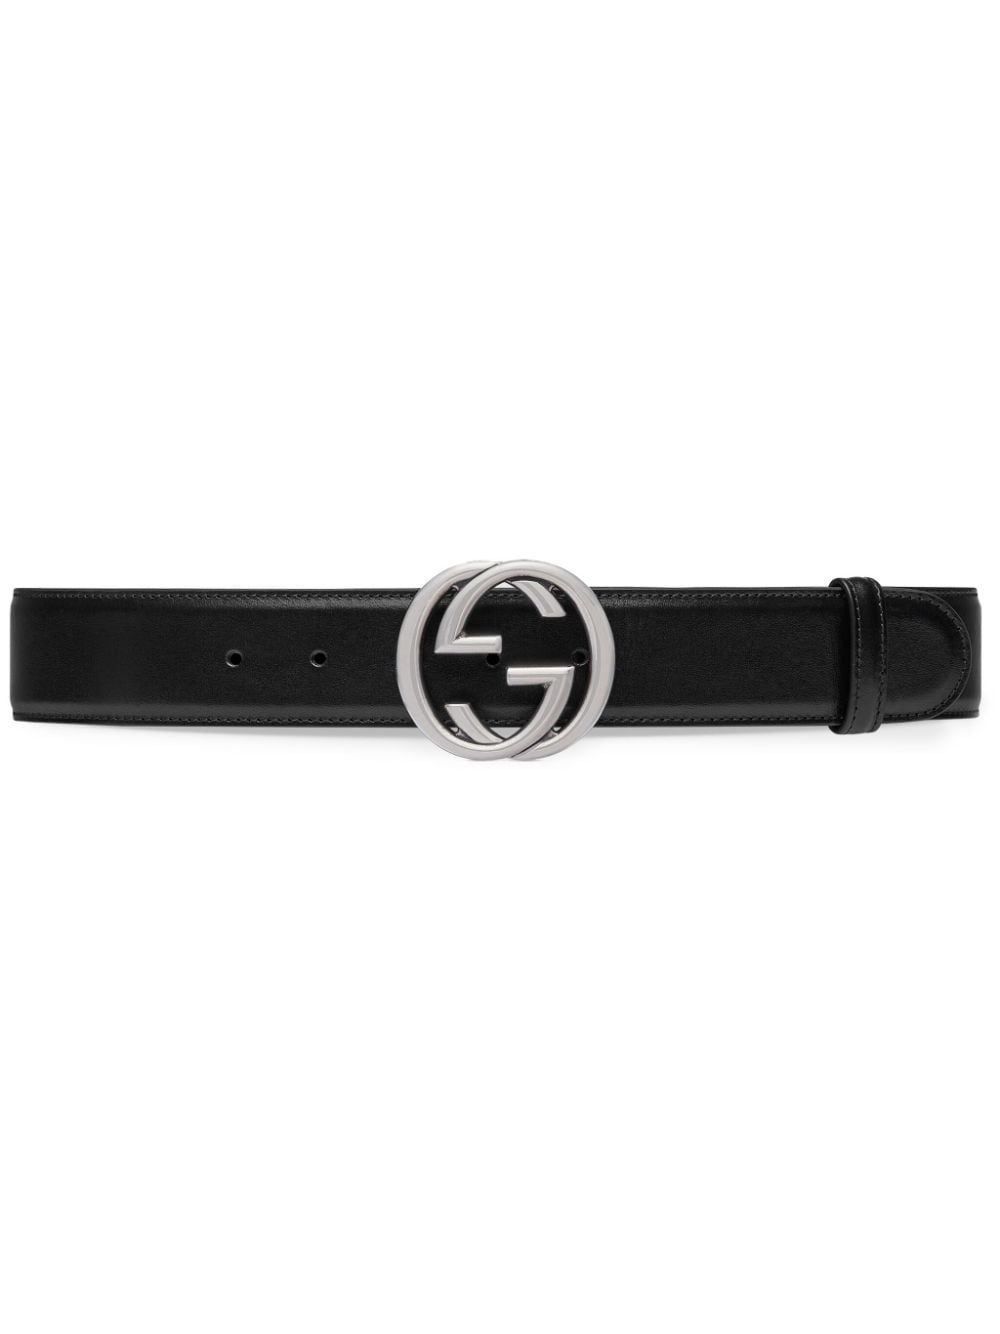 Gucci Interlocking G leather belt - Black von Gucci